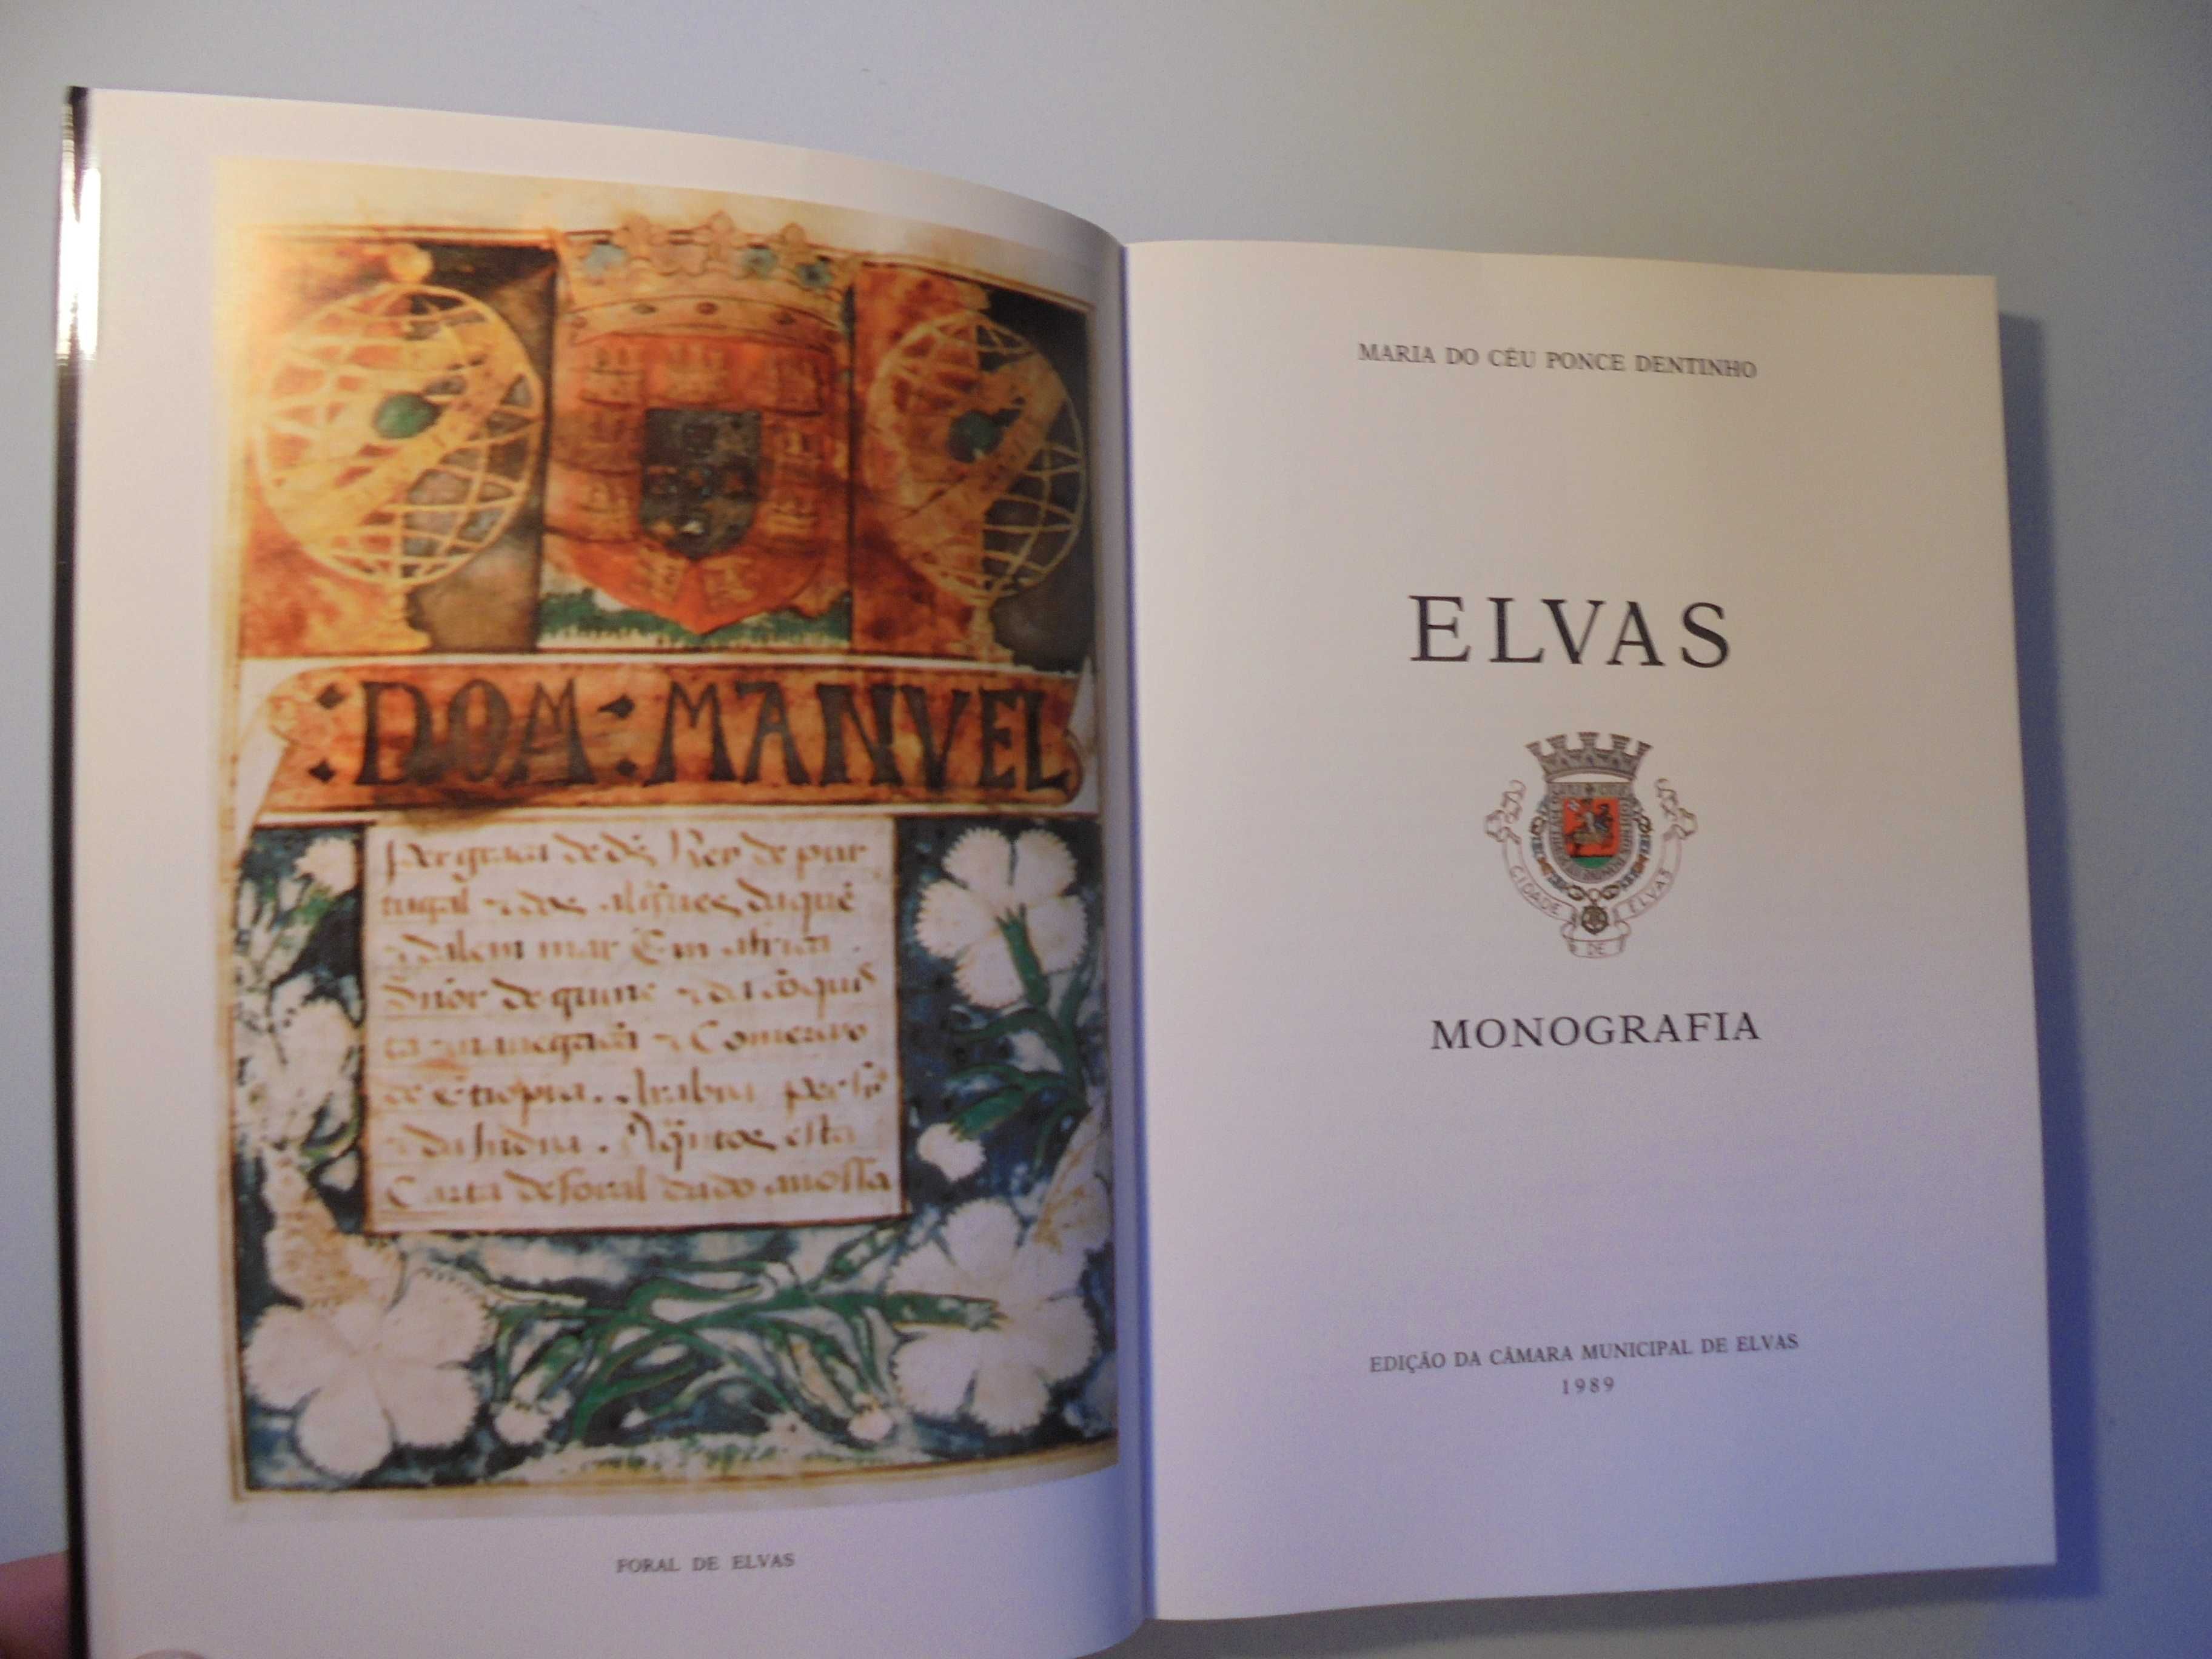 Elvas-Dentinho (Maria do Céu Ponce);Elvas-Monografia